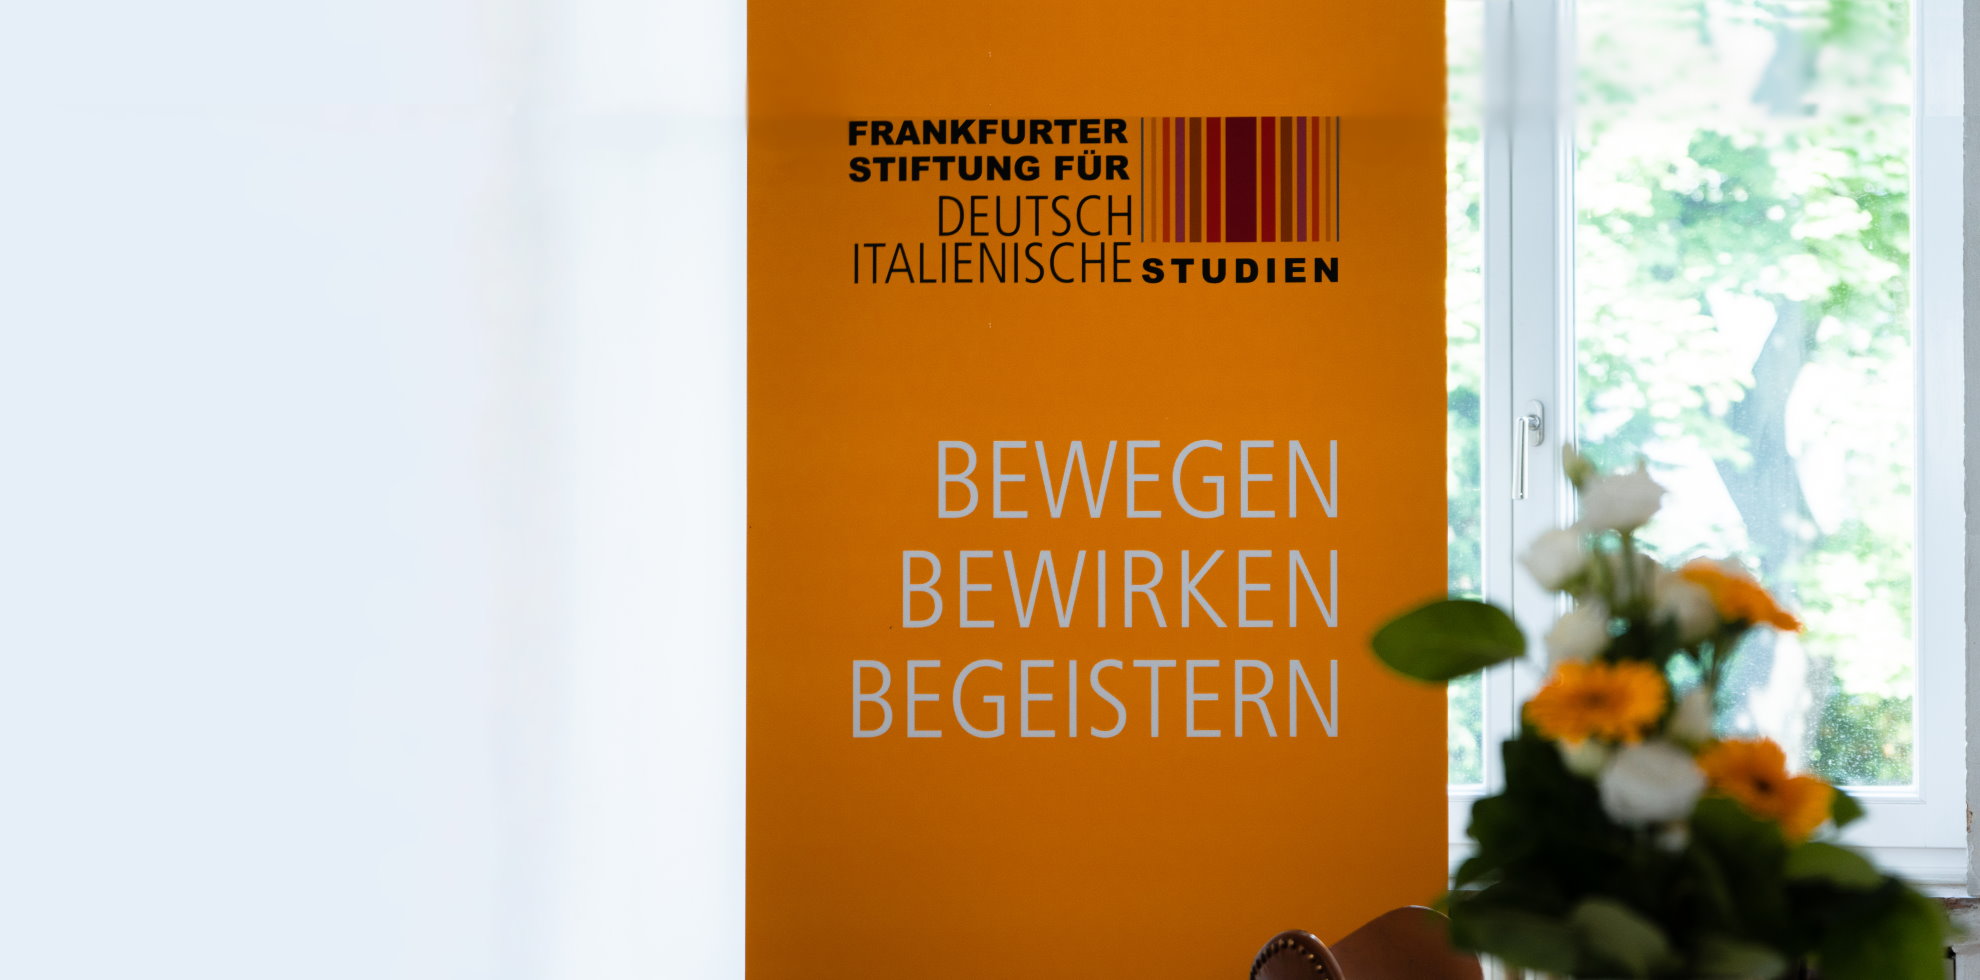 Frankfurter Stiftung für deutsch-italienische Studien